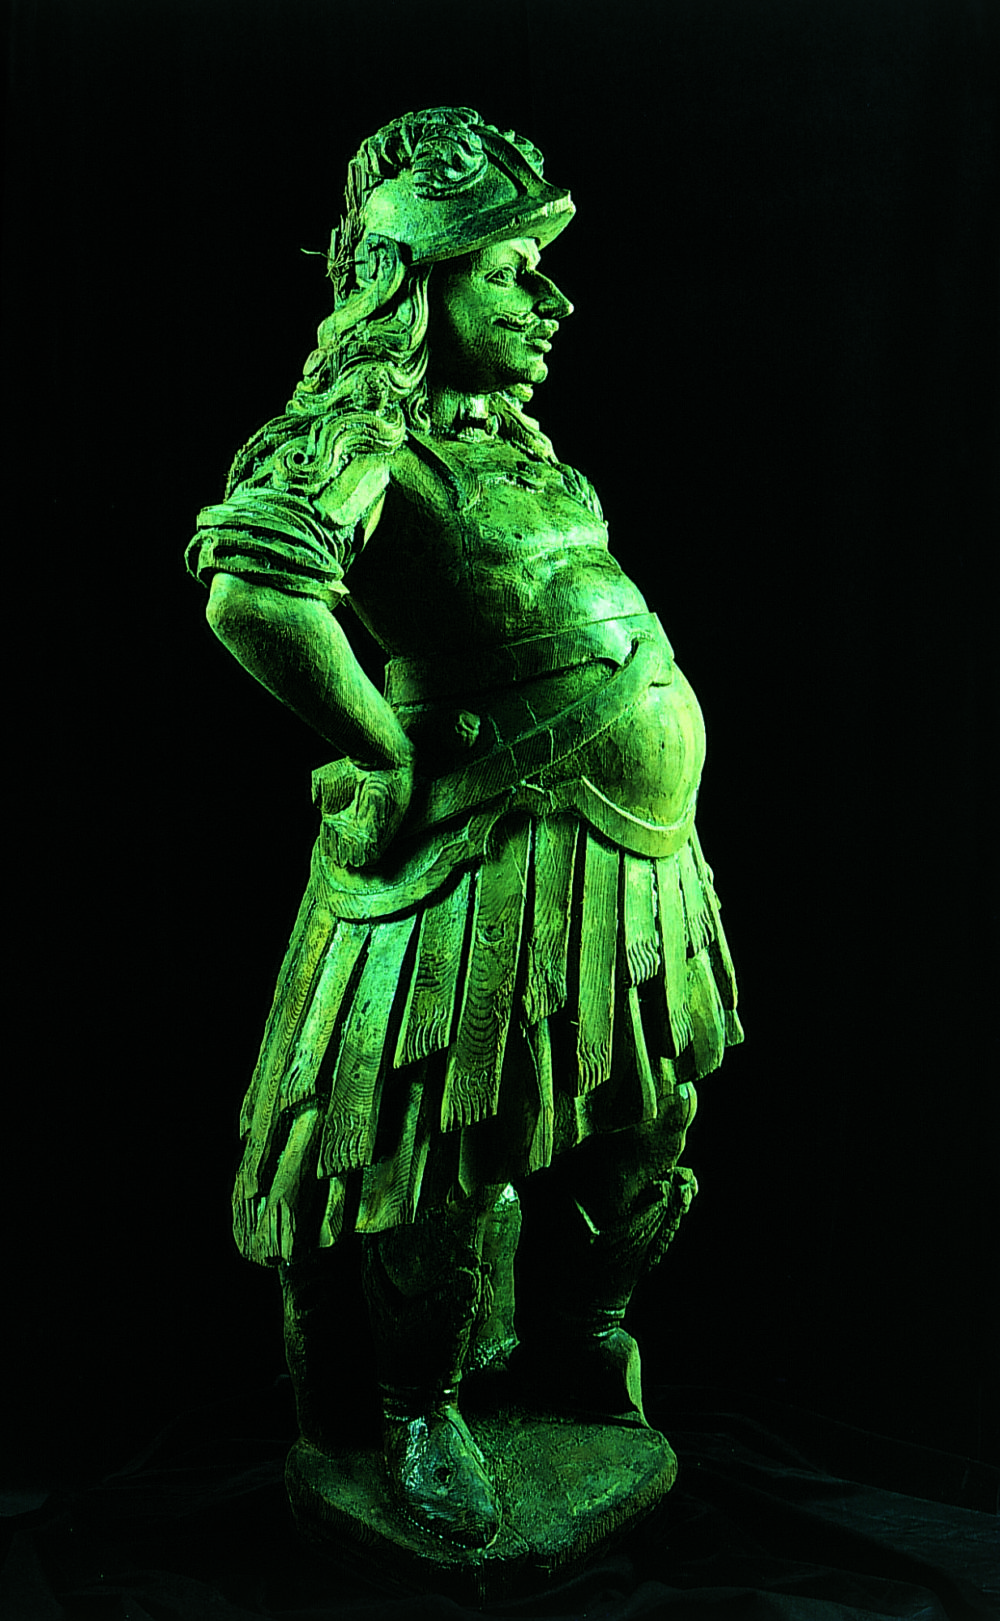 Skulptur av romersk kriger, påtruffet under skipets babordside. Figuren er 155 
cm høy og veier 60 kg. Figuren fremstiller sannsynligvis kong Karl X Gustav. ©/Foto: Kalmar läns museum/Kronanprojektet
